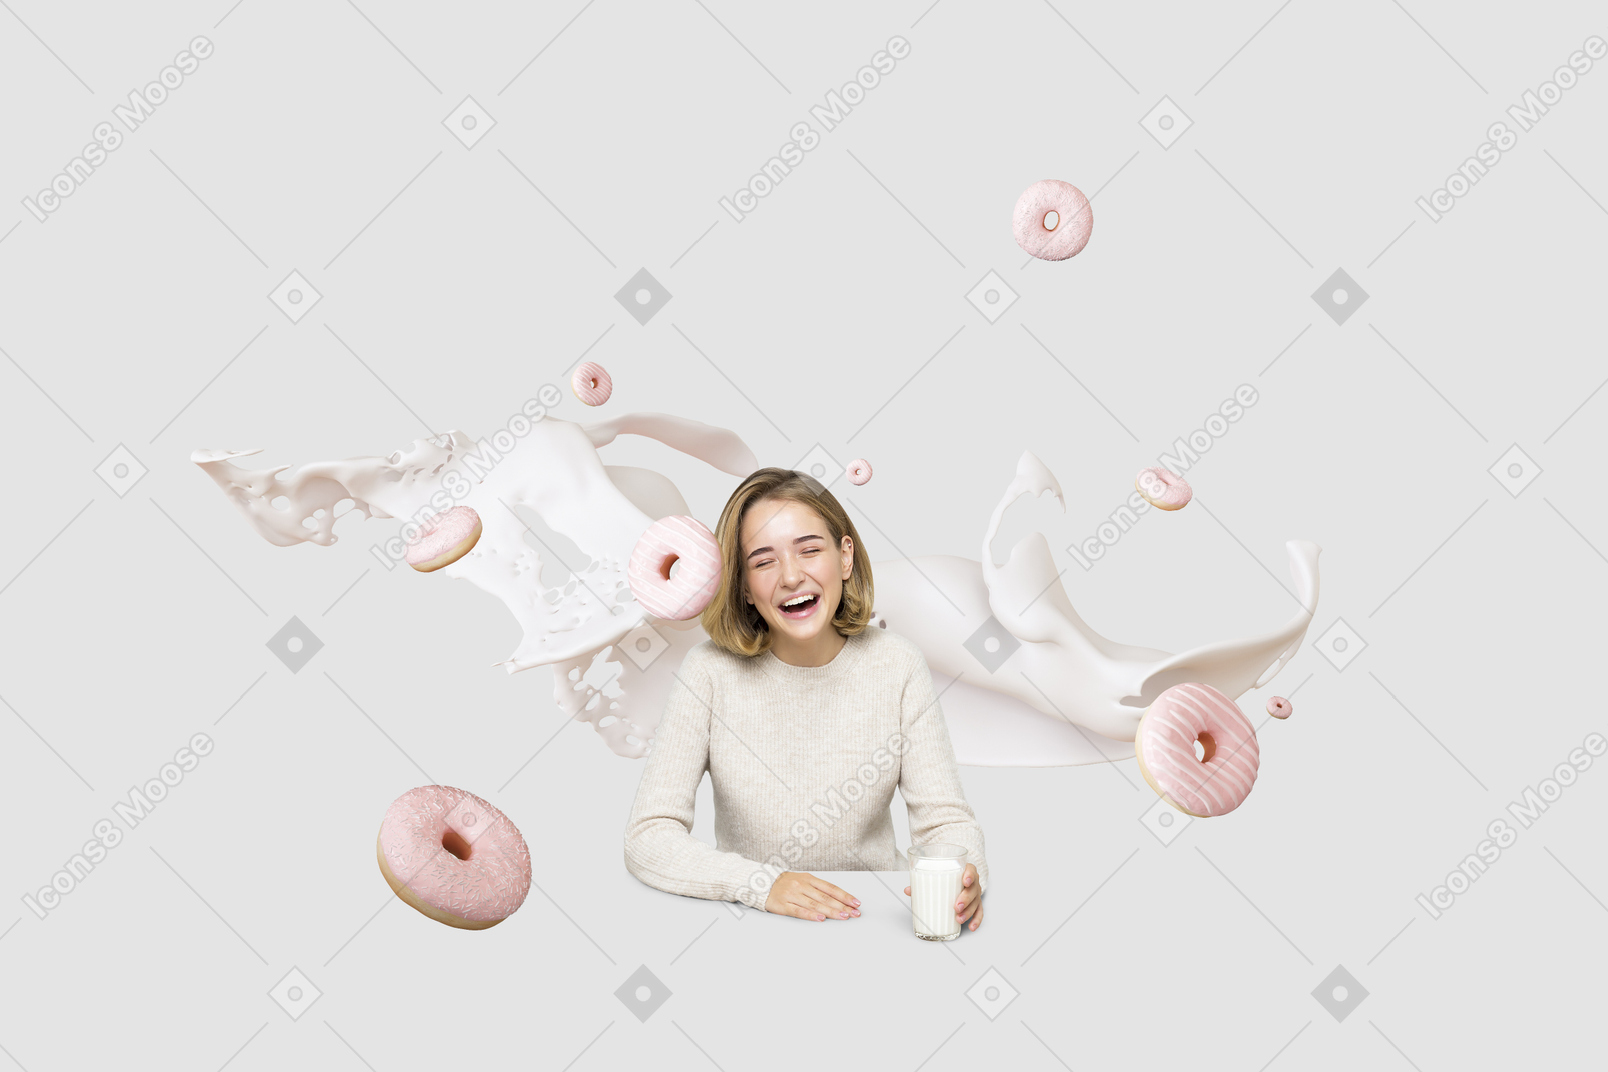 Mädchen mit milch und donuts